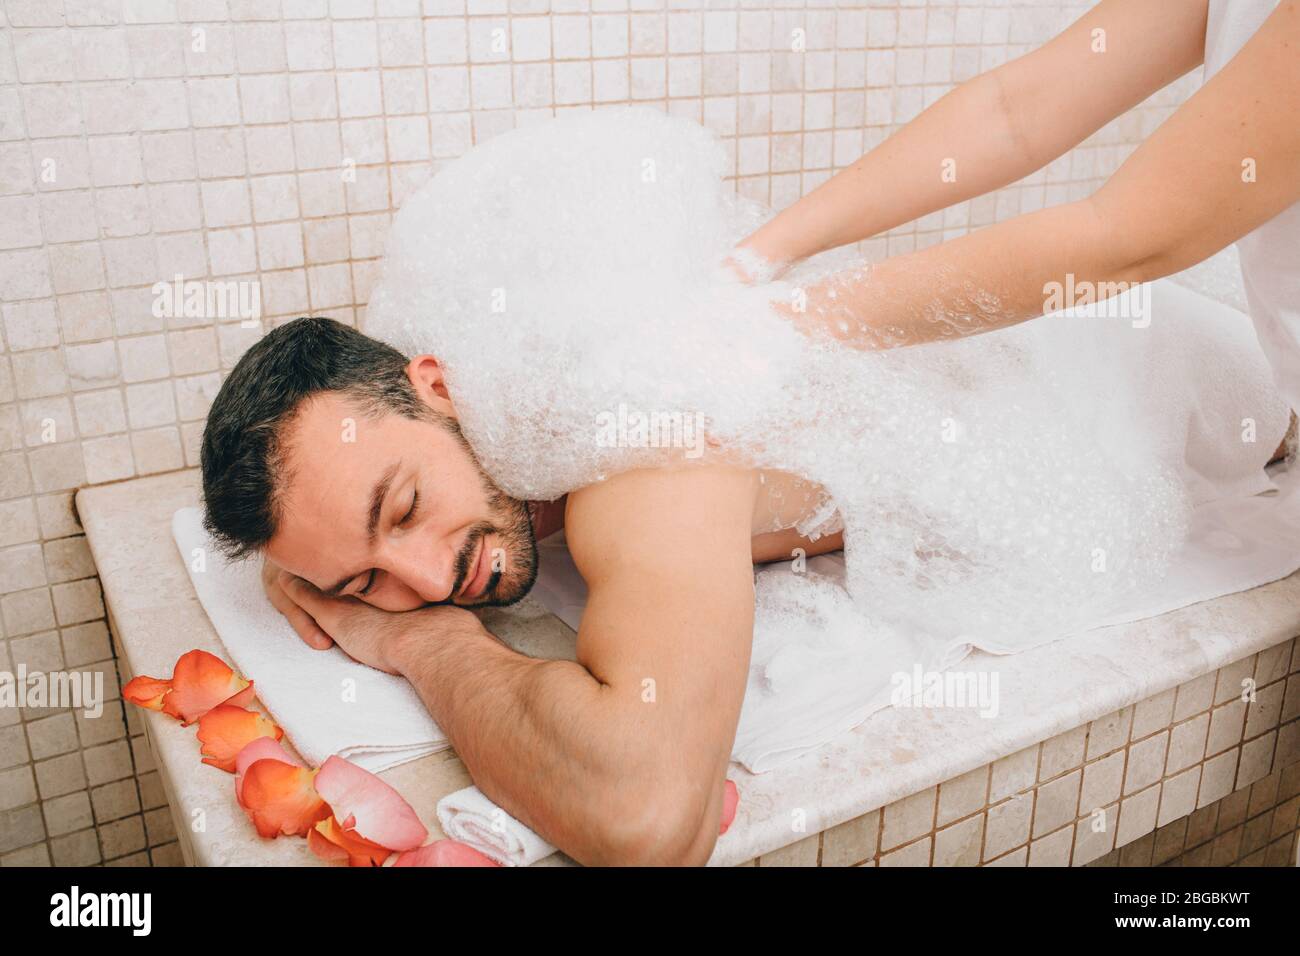 Relaxation de luxe oriental homme dans un bain turc. Un ouvrier du hammam lave la peau des hommes dans le hammam Banque D'Images